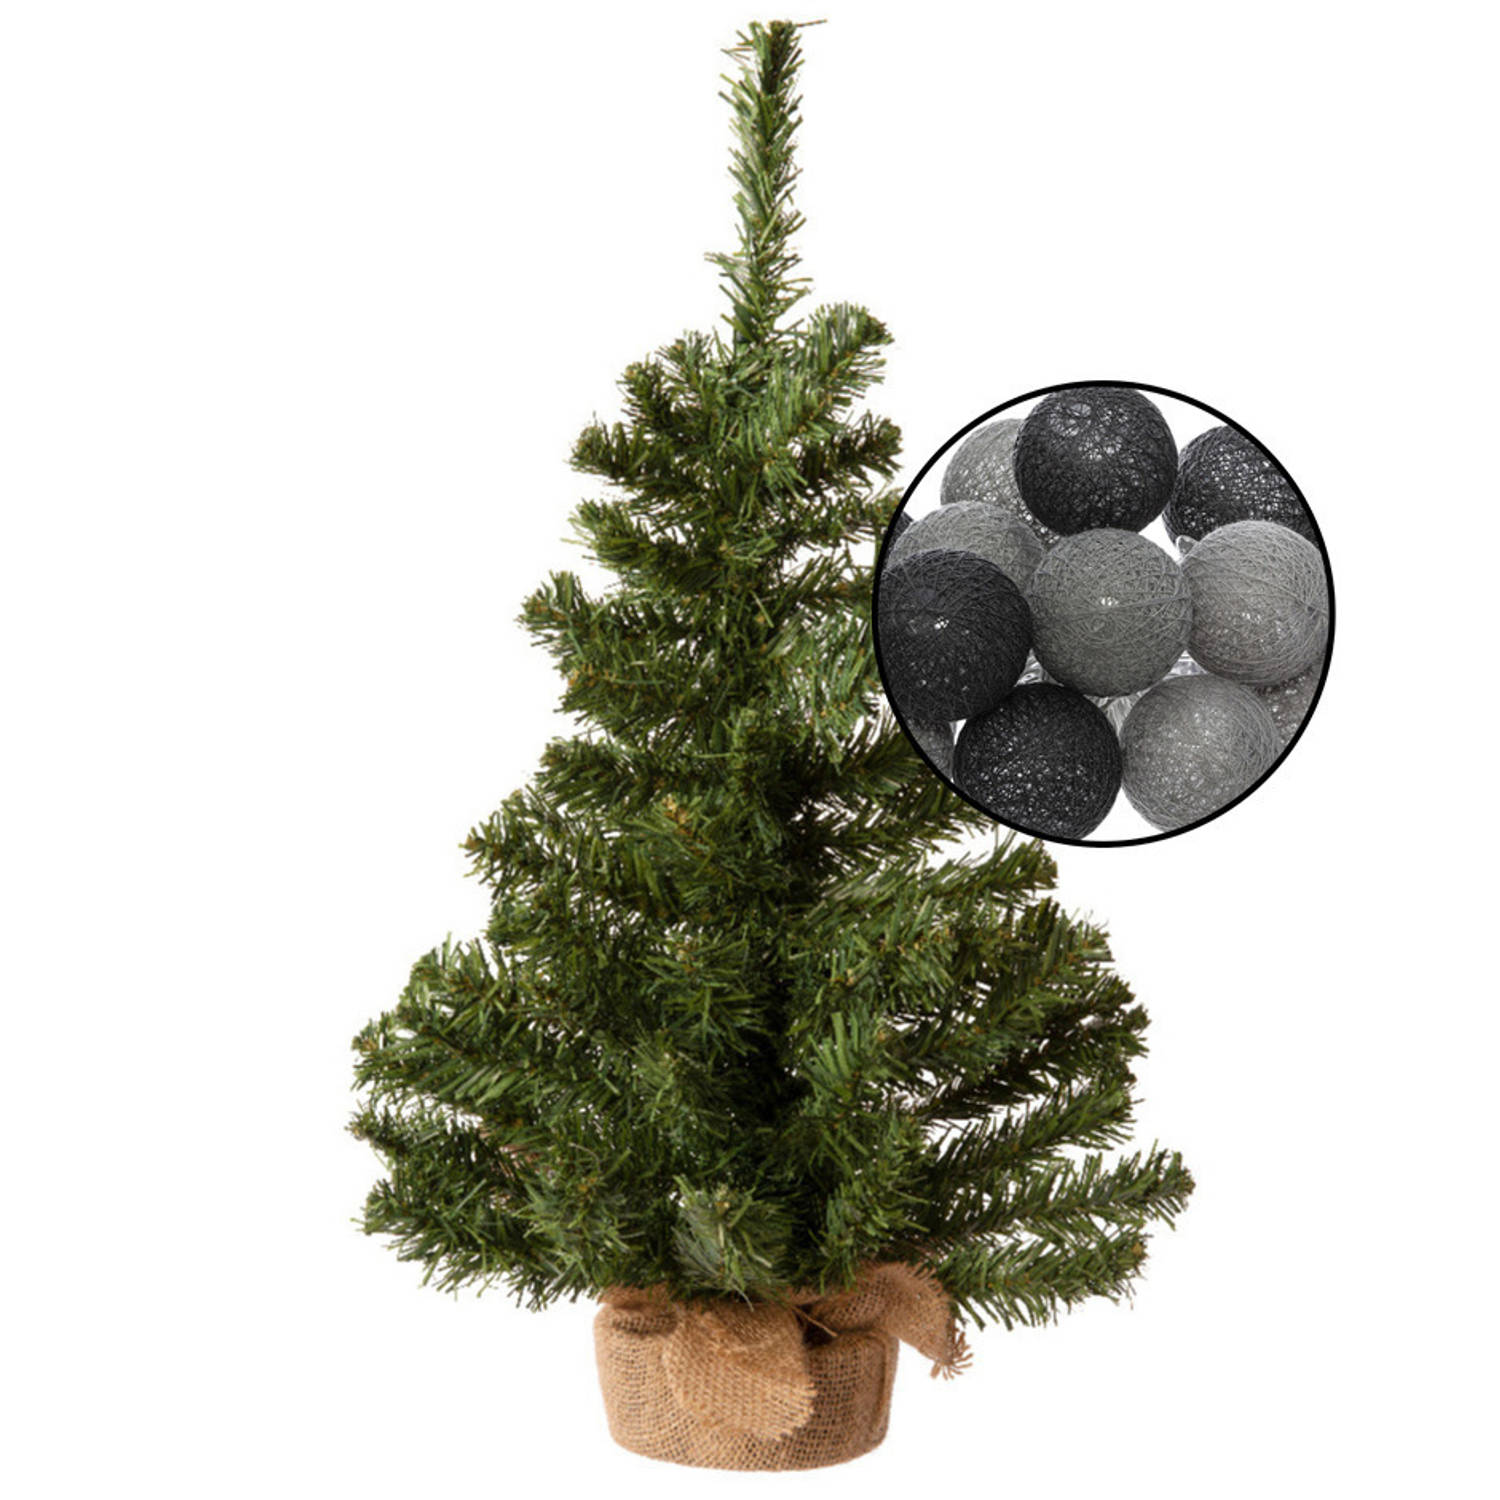 Mini kunst kerstboom groen met verlichting bollen zwart-grijs H60 cm Kunstkerstboom